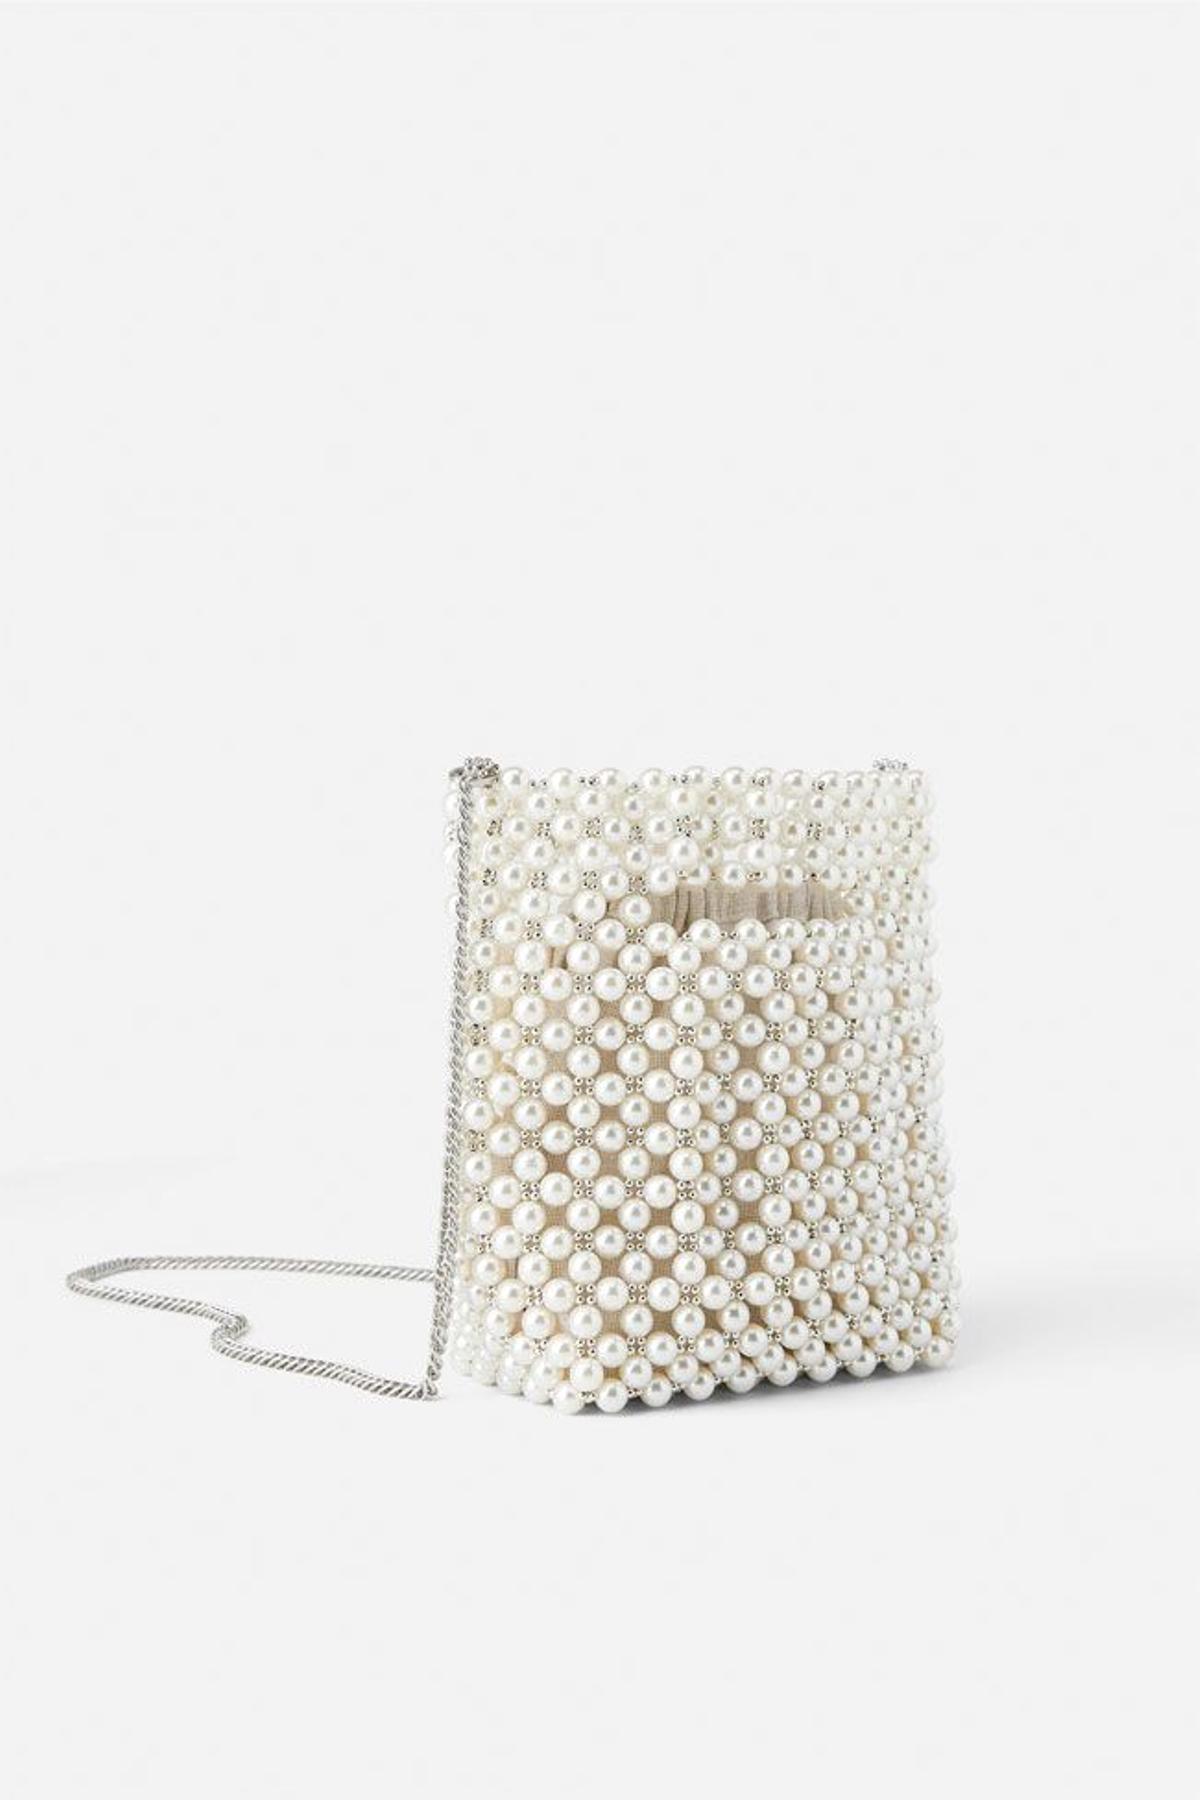 Bolso mini de perlas blancas, de Zara